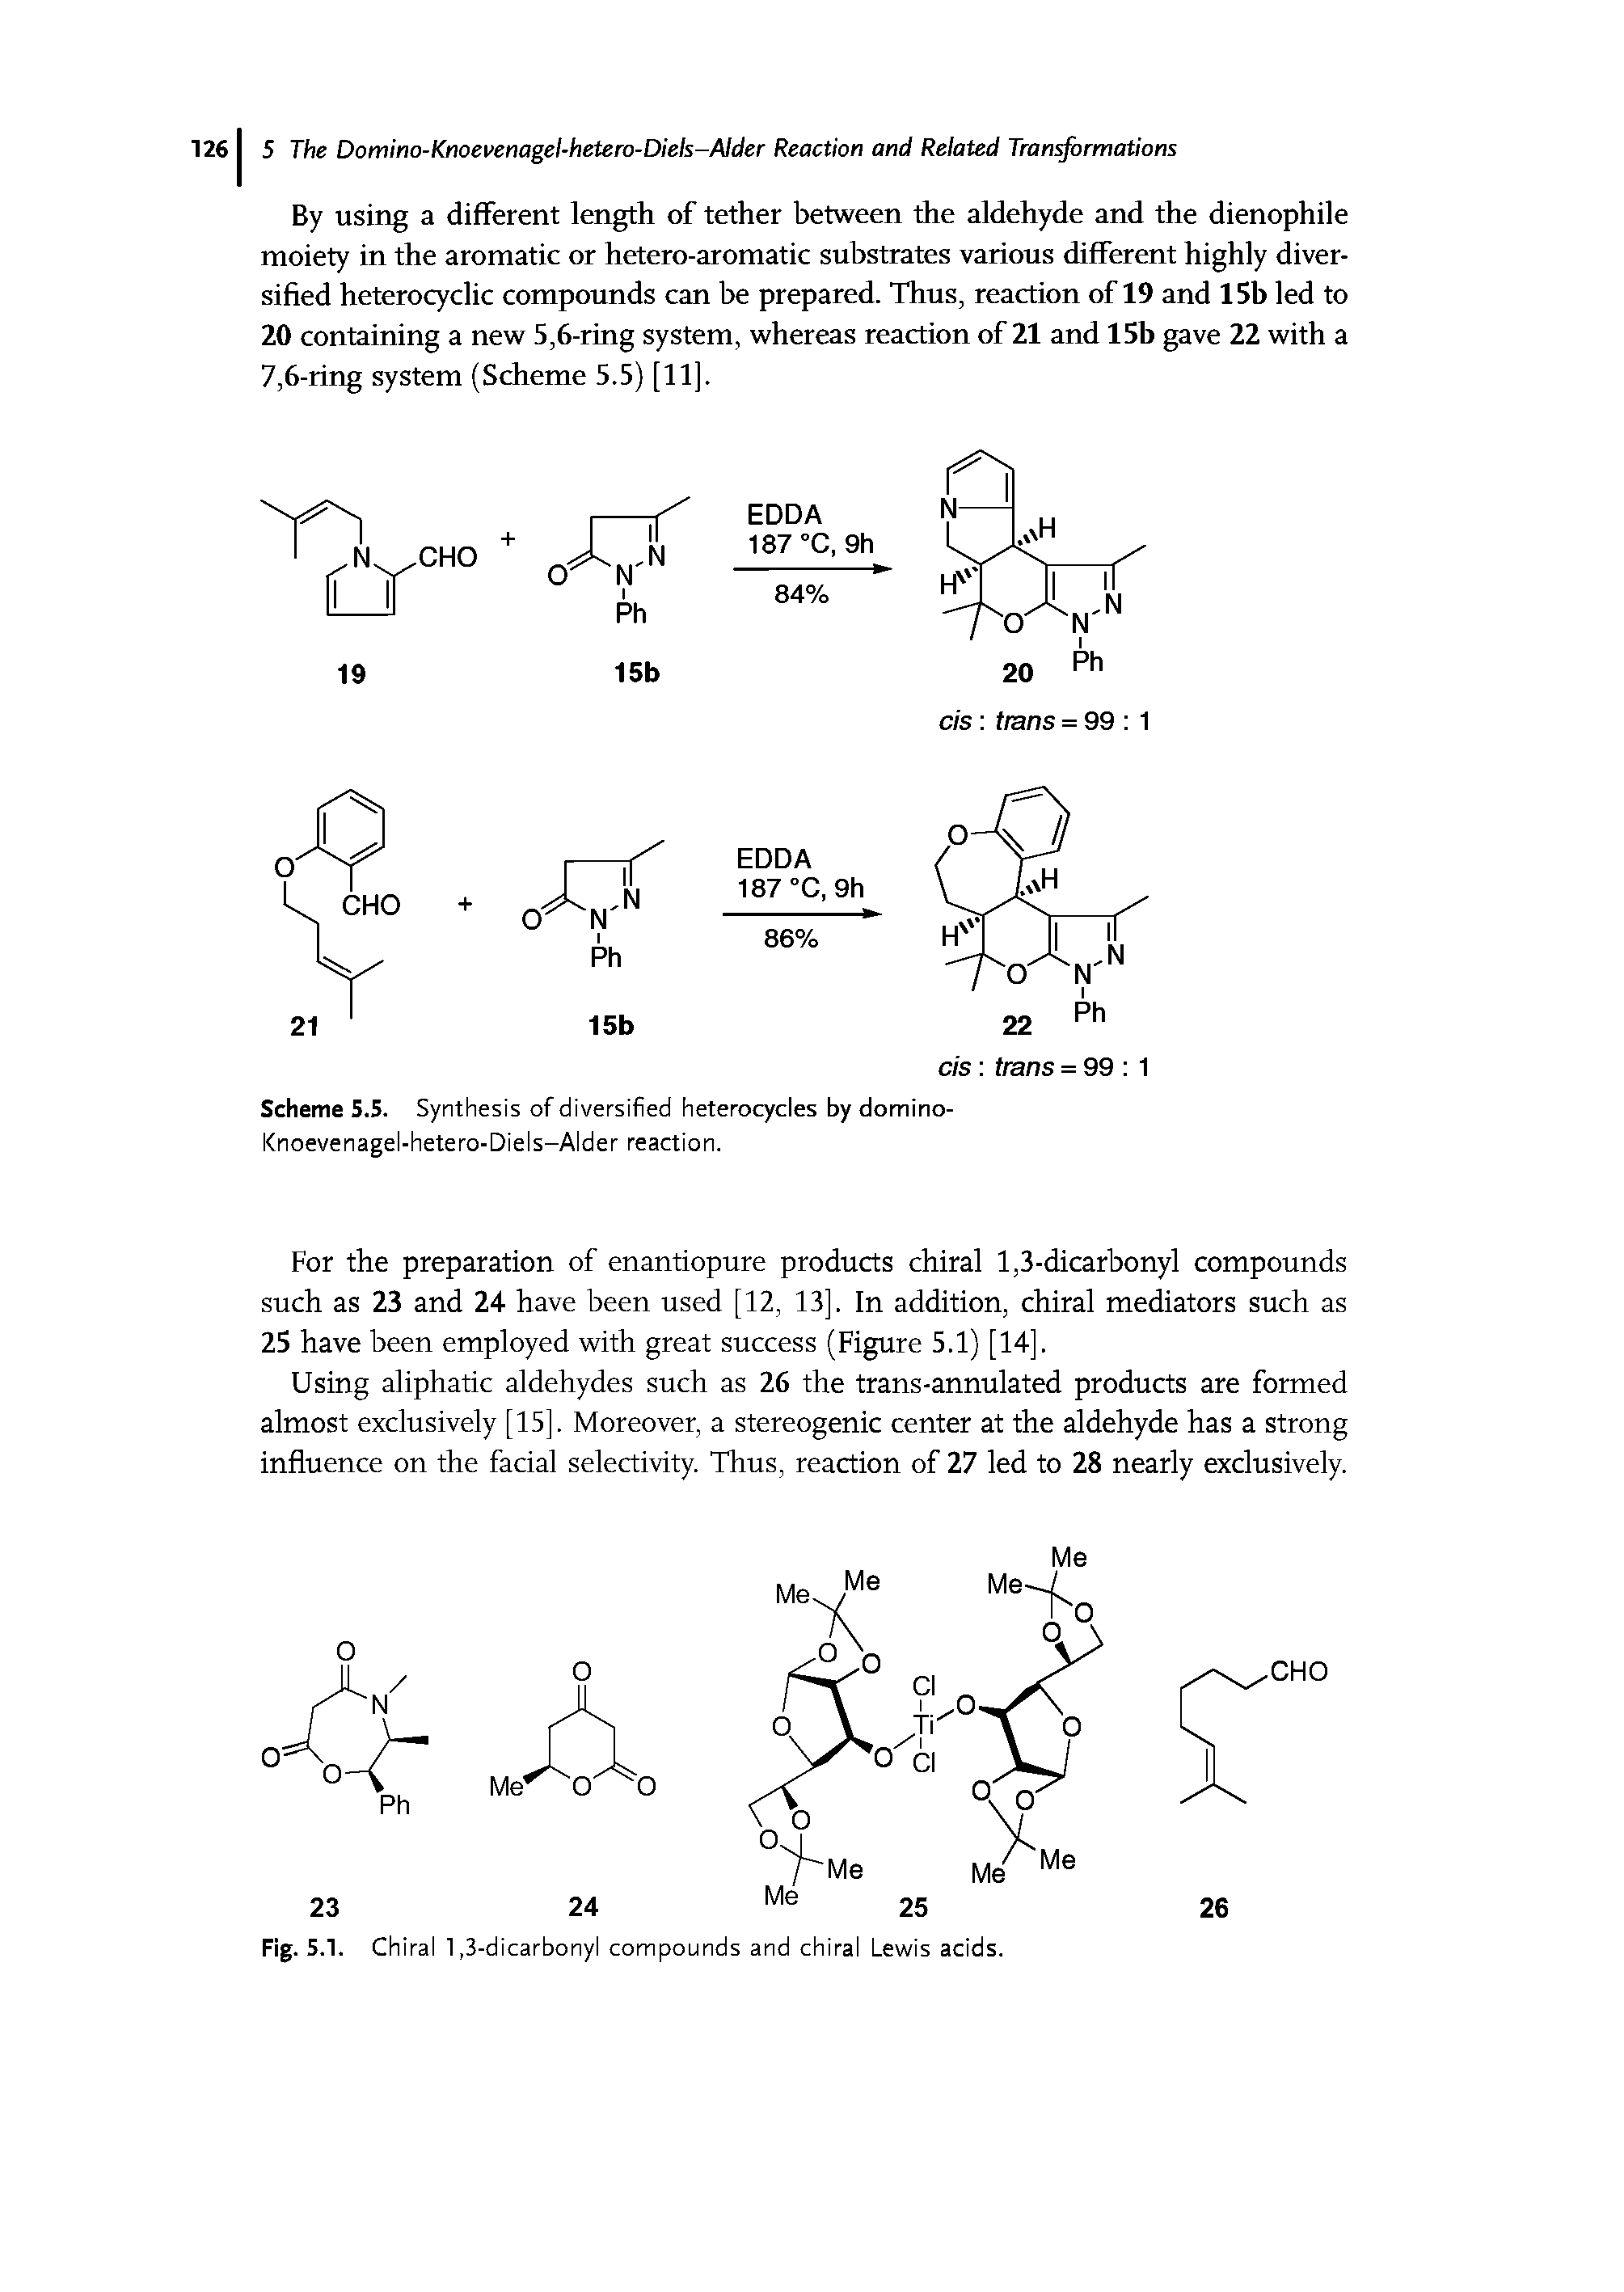 Scheme S.5. Synthesis of diversified heterocycles by domino-Knoevenagel-hetero-Diels-Alder reaction.